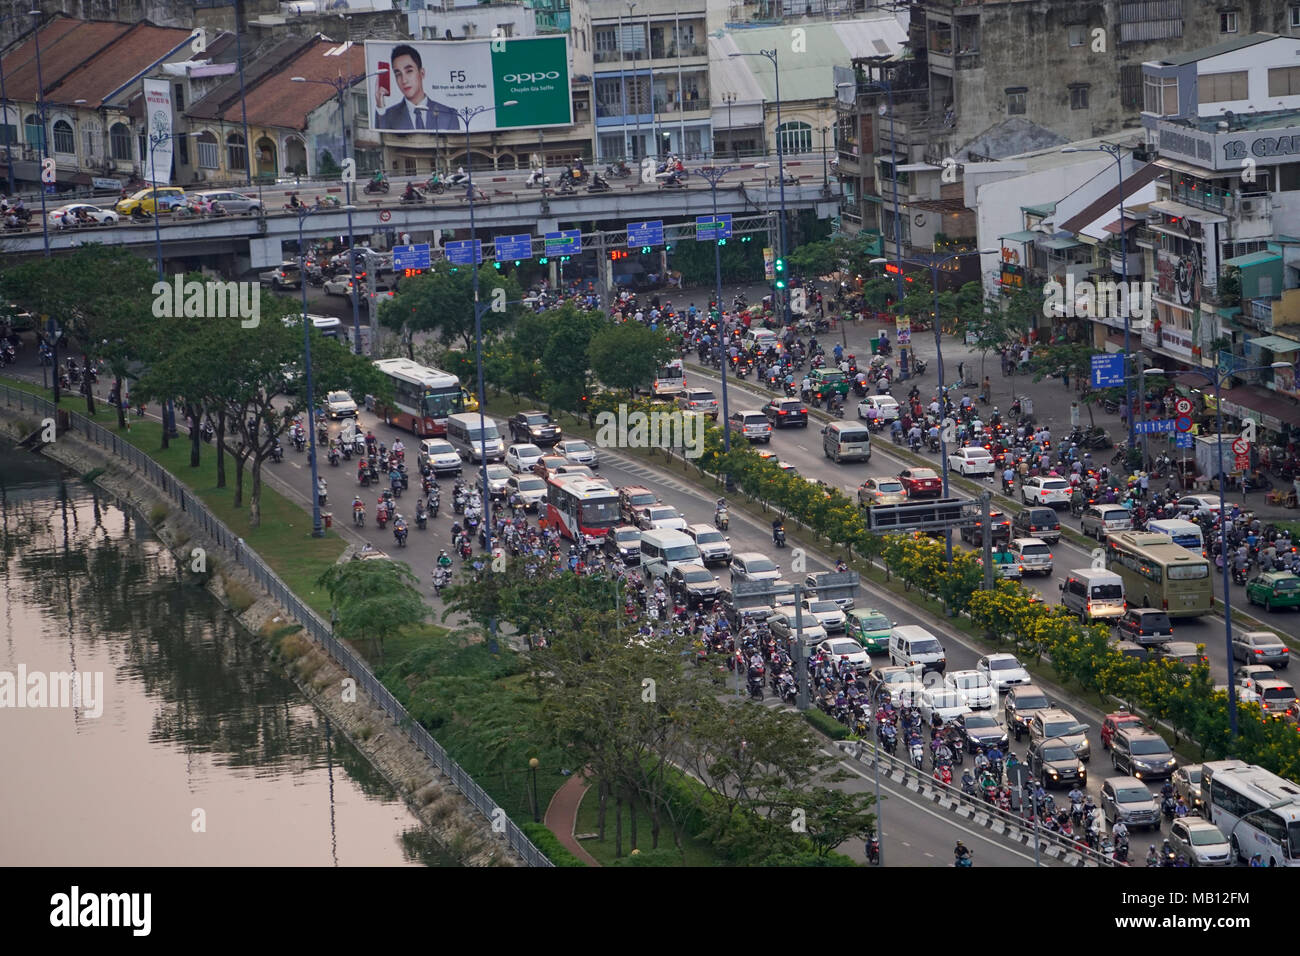 Traffico, Ben Nghe River, Città di Ho Chi Minh (Saigon) Vietnam Foto Stock